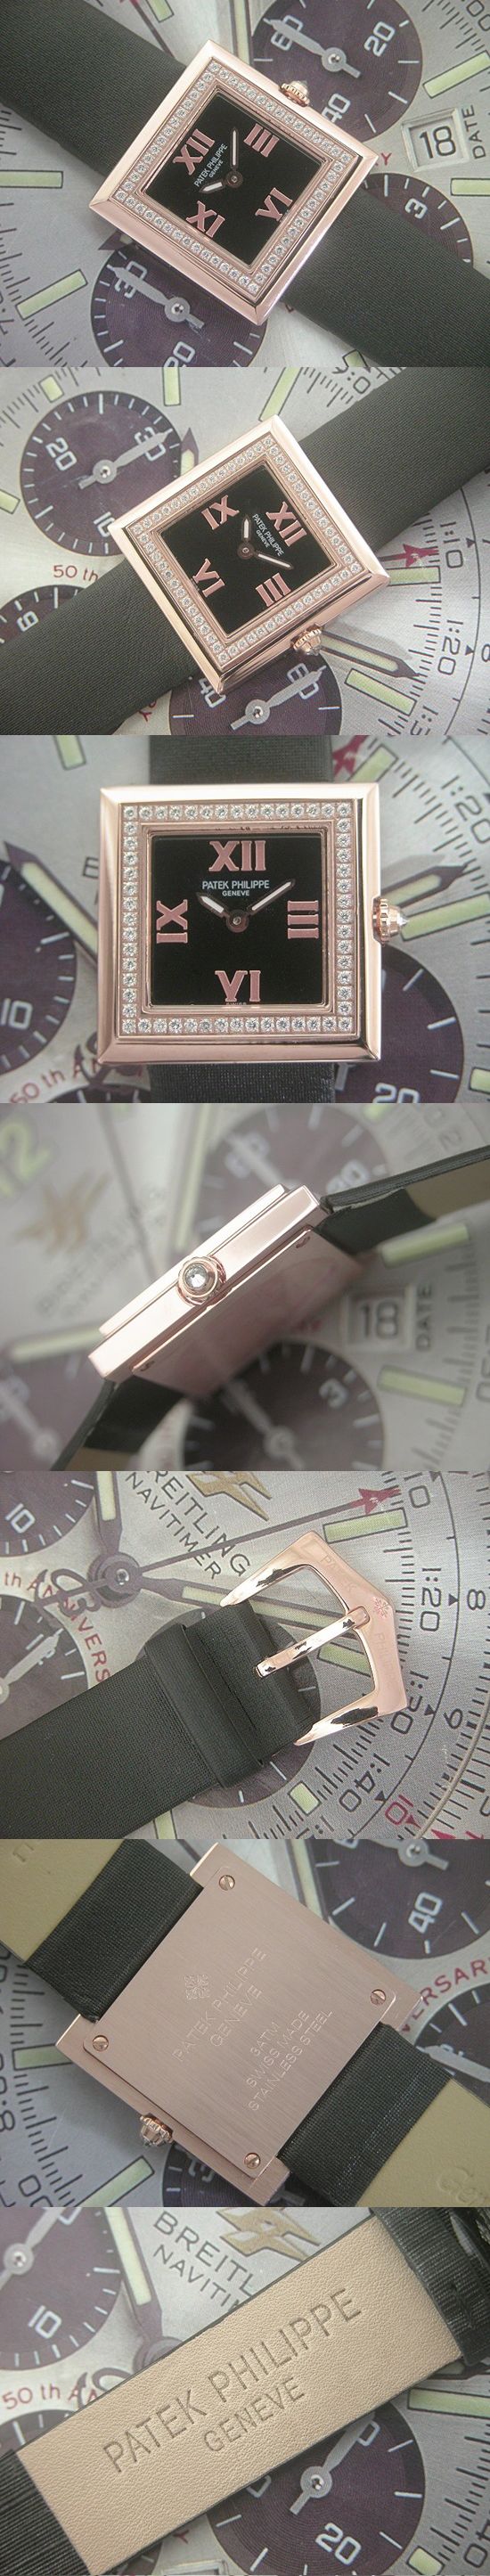 おしゃれなブランド時計がパテックフィリップ -ジュエリー-PATEK PHILIPPE-4869-aa-女性用を提供します.